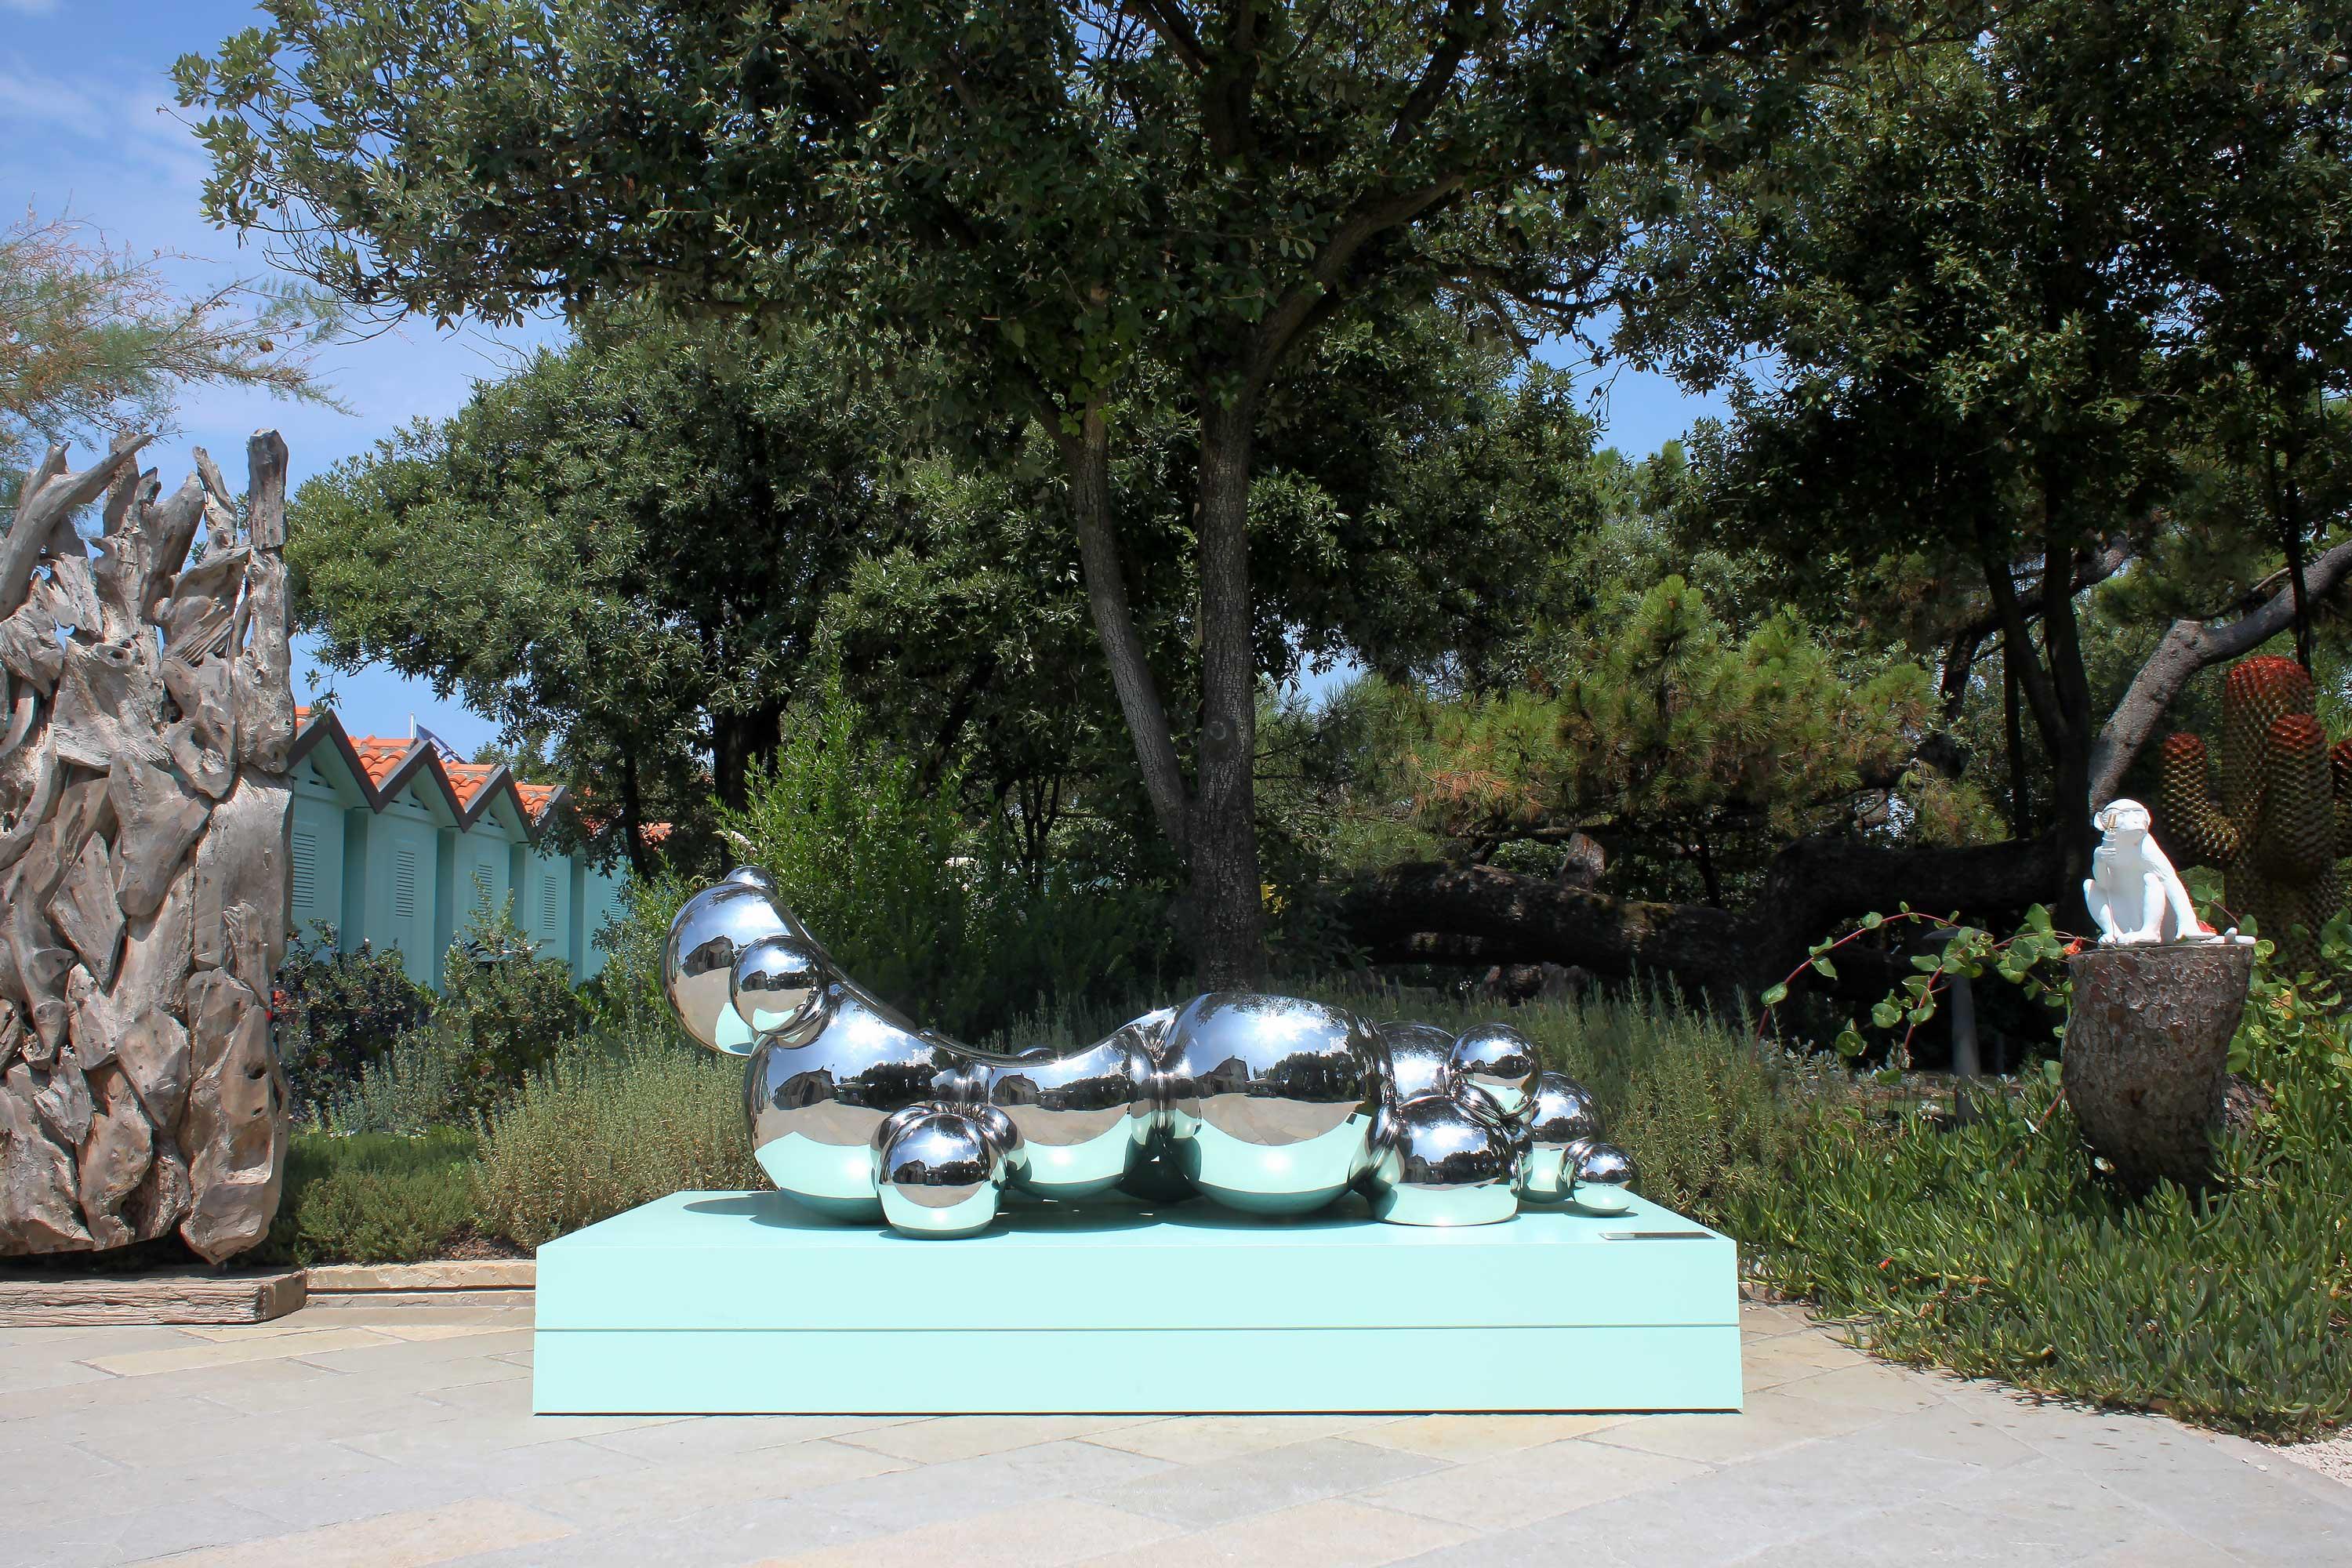 Die skulpturale Chaiselongue 'Golem' ist eine imposante Skulptur aus hohlen Edelstahlkugeln, die einzeln von Hand geschweißt und hochglanzpoliert wurden. Ein gewundener Kreisel durchschneidet die Kugelgruppe, die die Chaiselongue bildet, auf der man